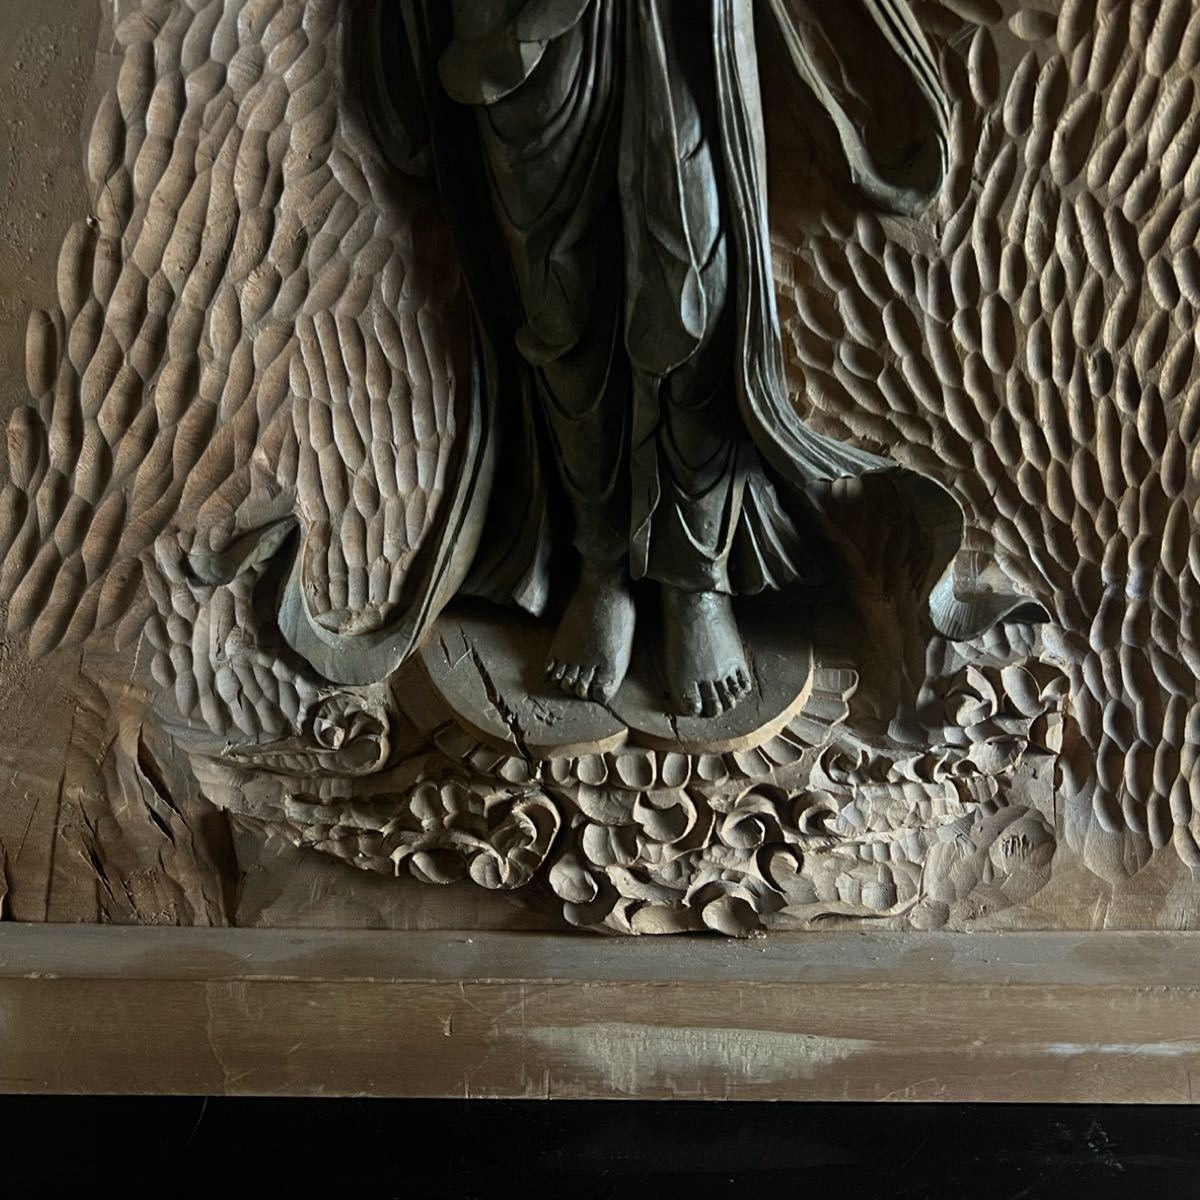 スコータイ様式菩薩像 仏像座像東洋彫刻宗教美術インテリア置物 